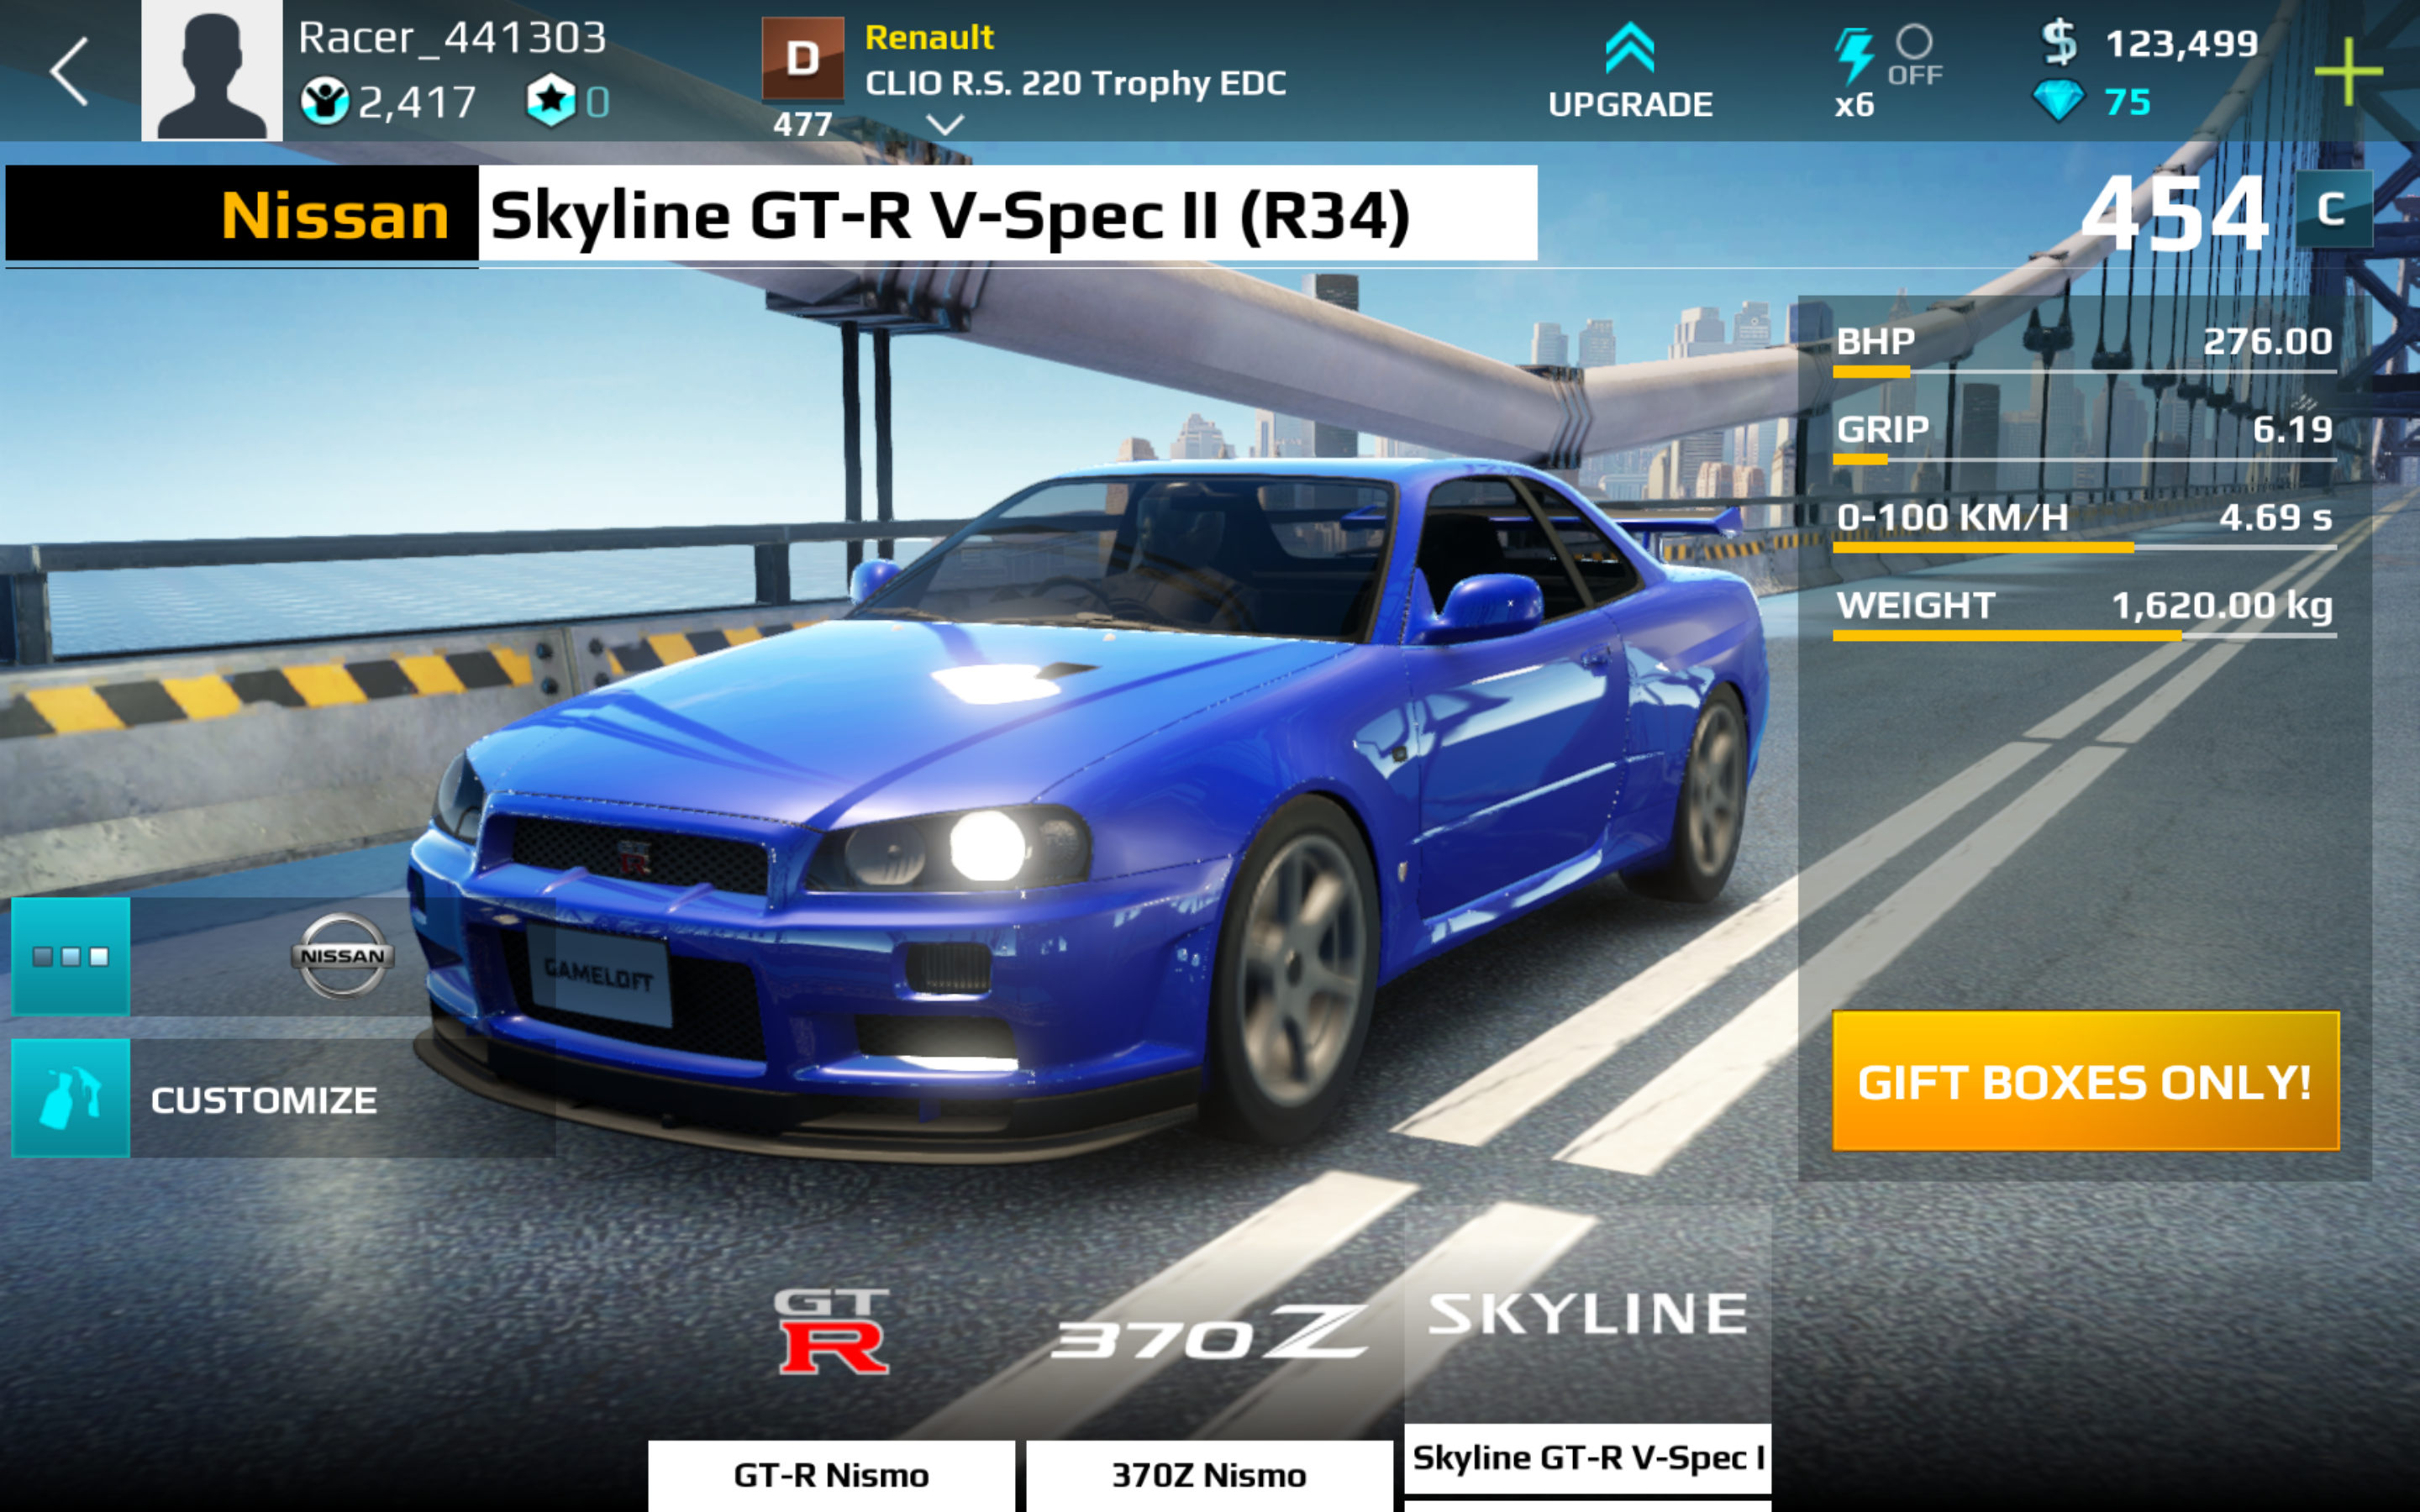 Nissan Skyline R34 Gtr Price